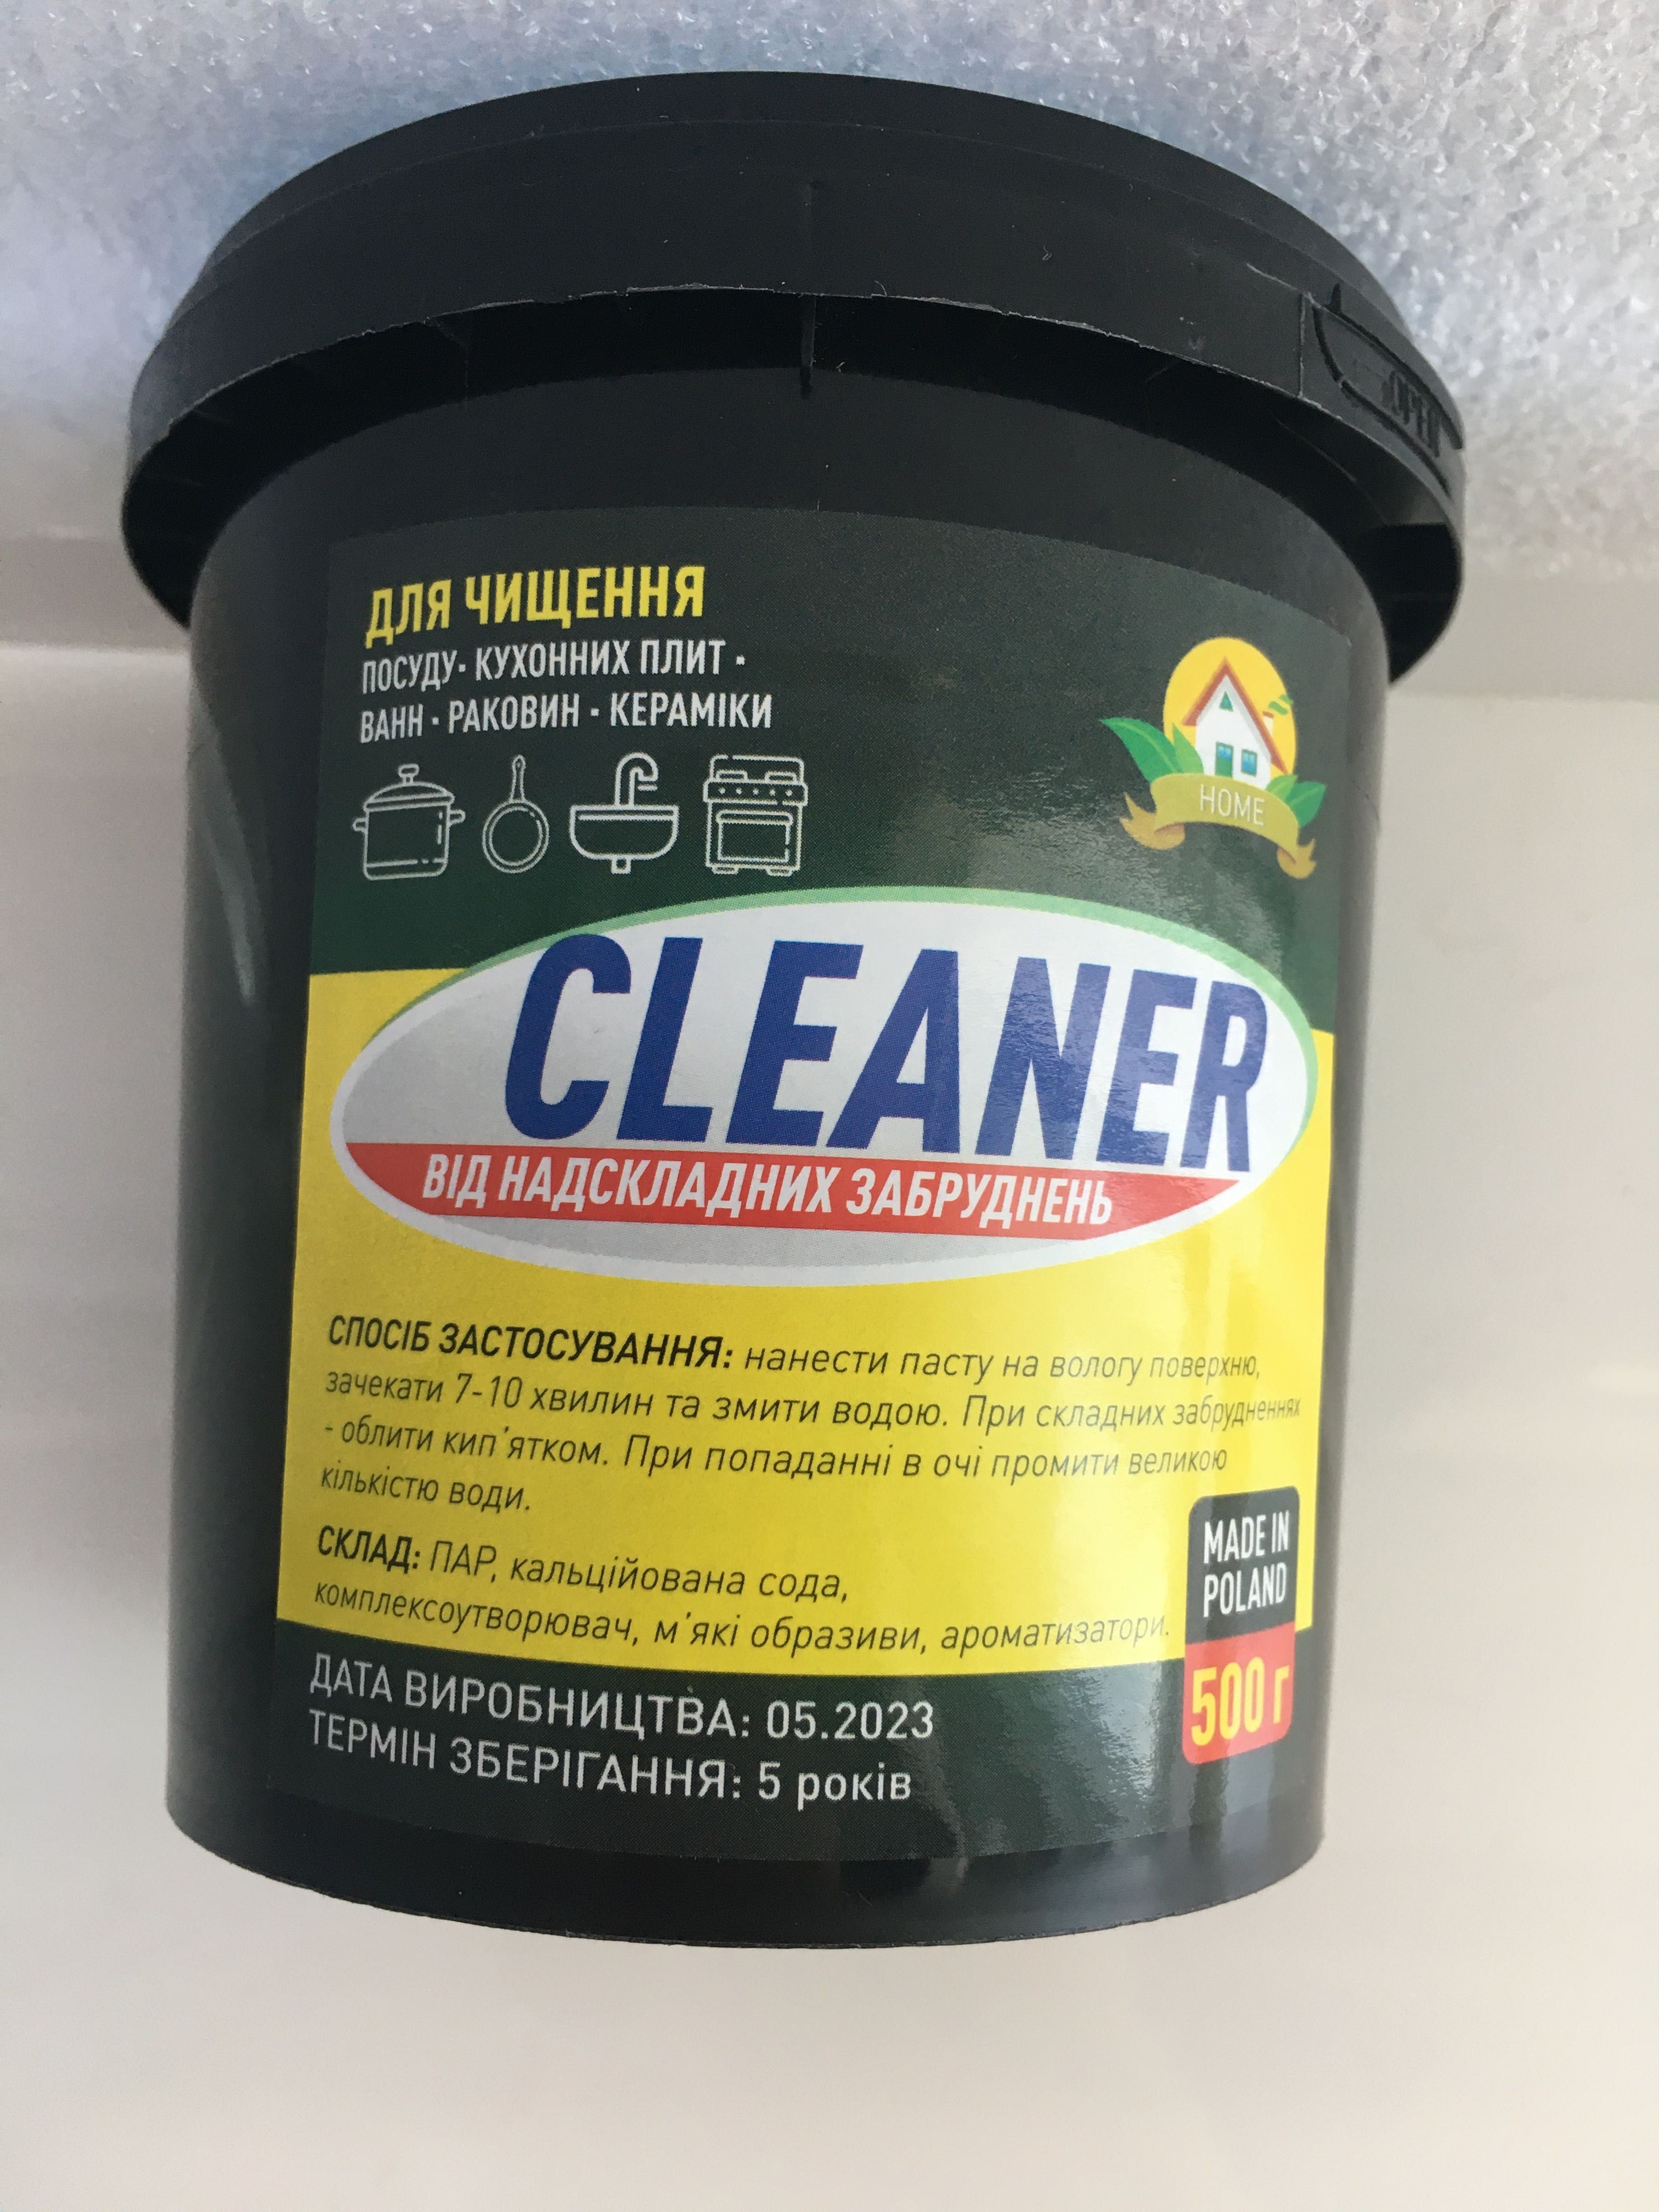 Cleaner/ для чищення посуду/кухонних плит/ванн/раковин/кераміки